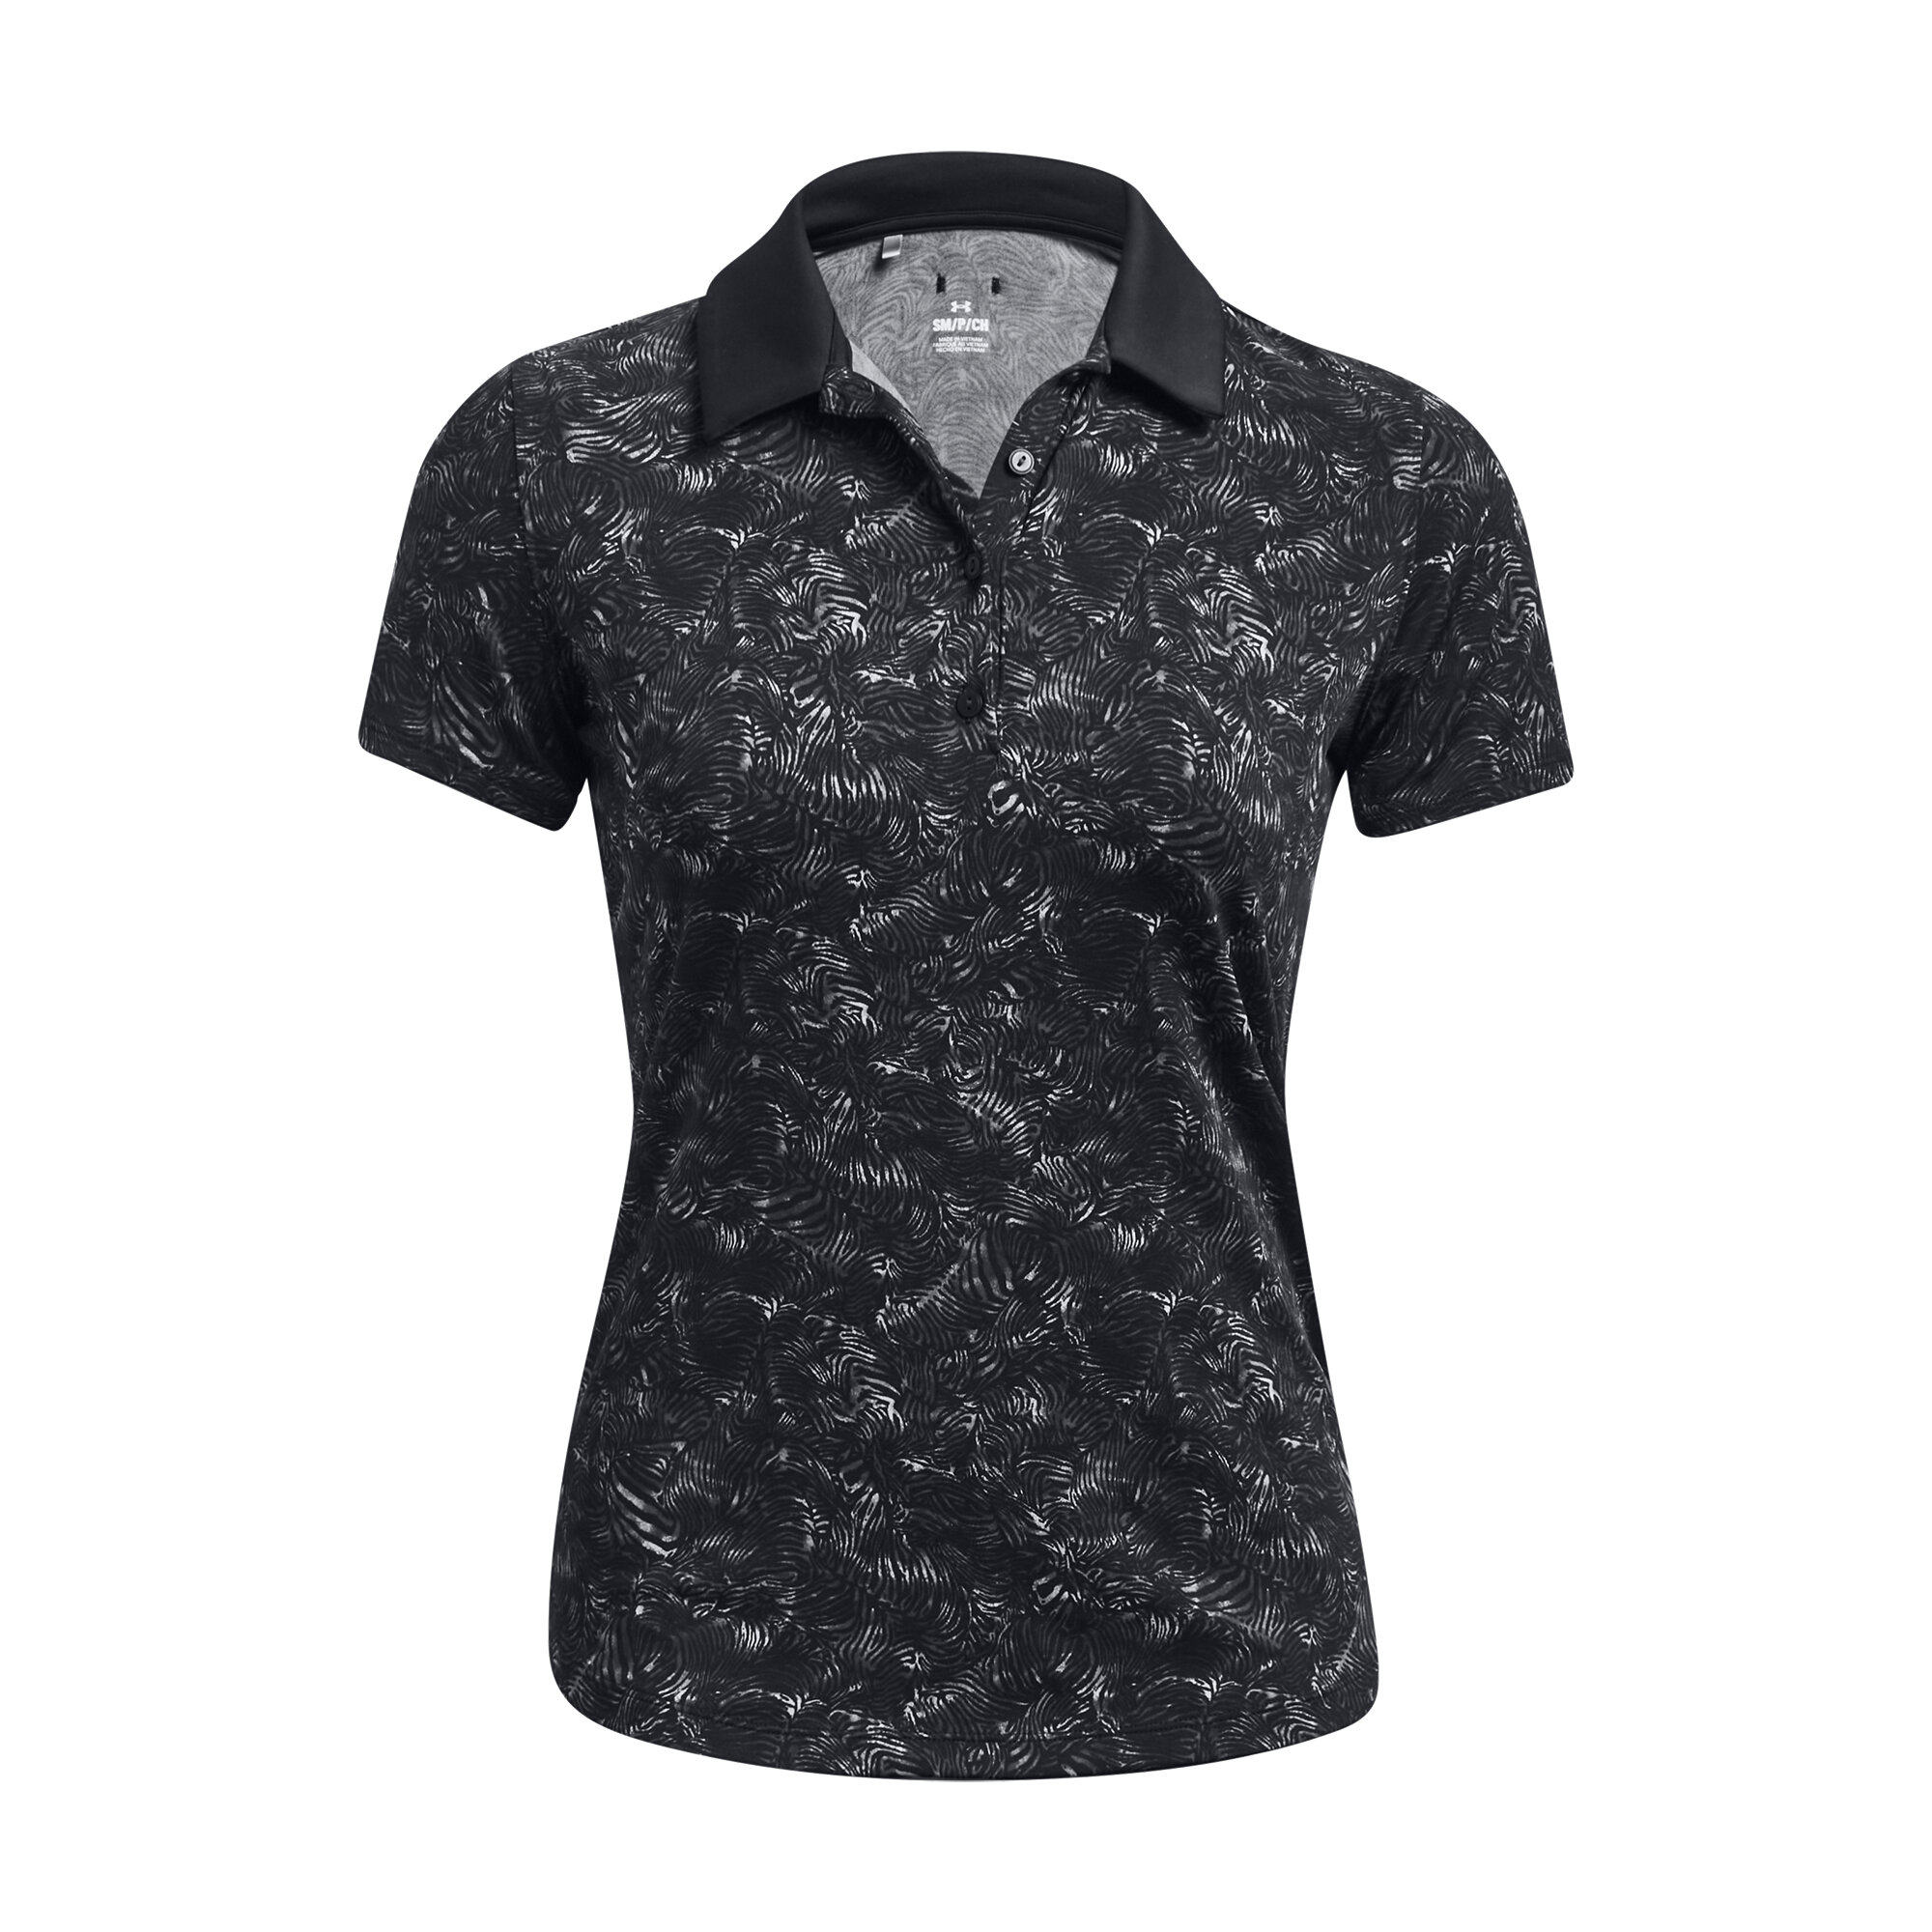 Under Armour Playoff Printed SS dámské golfové triko, černé, vel. XS